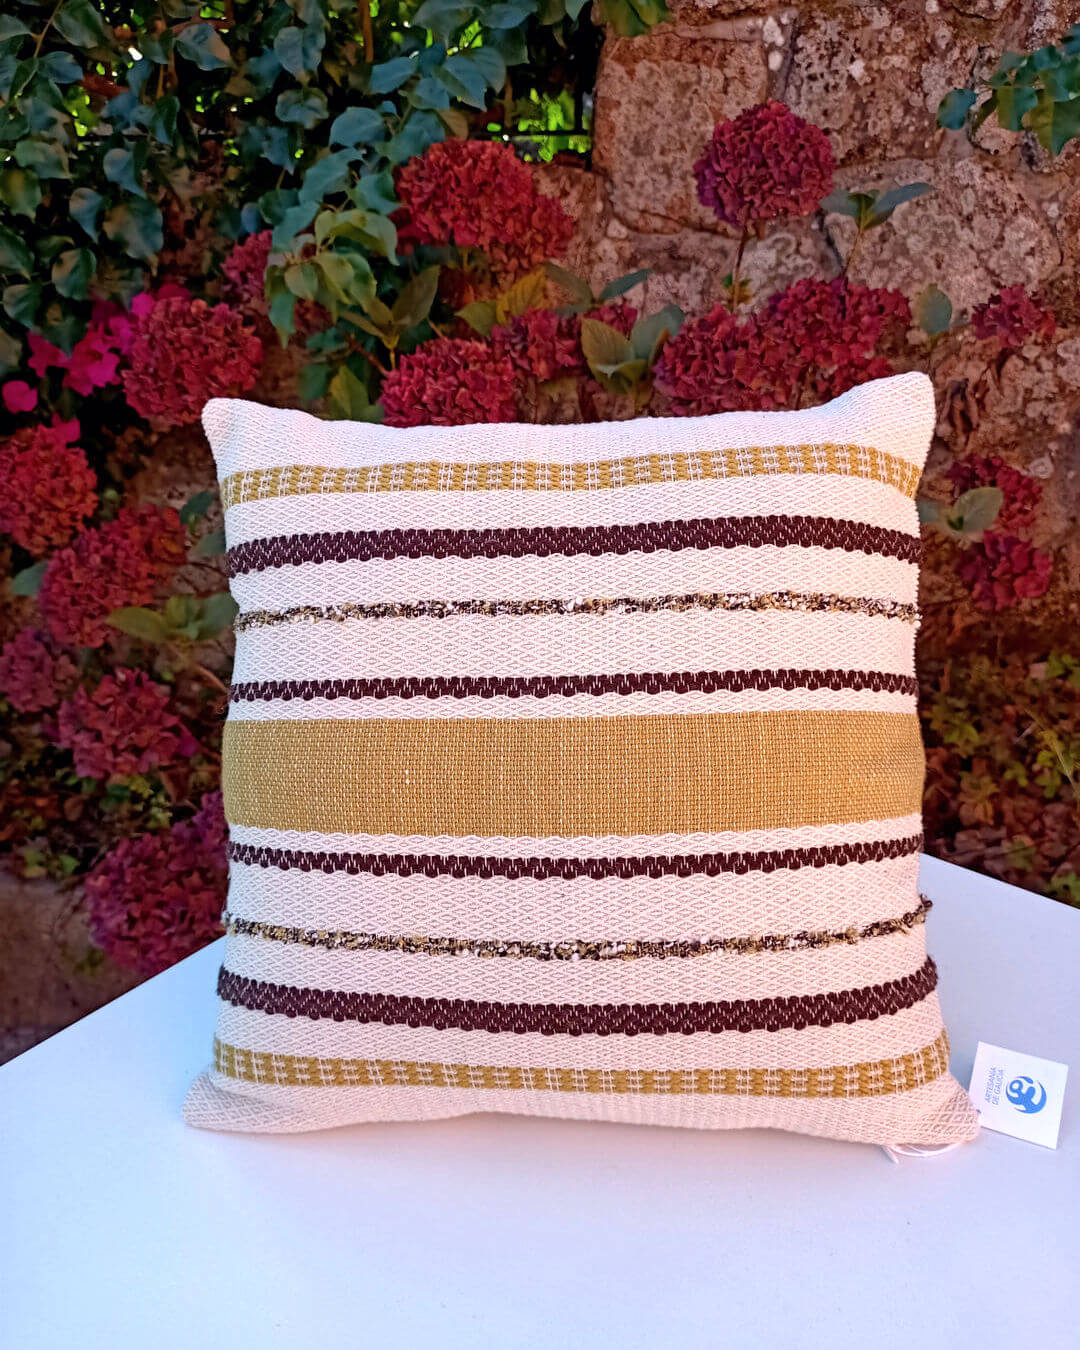 Funda de cojín tejida en algodón, lino y lana de Sandra Bastón - Artesanía textil